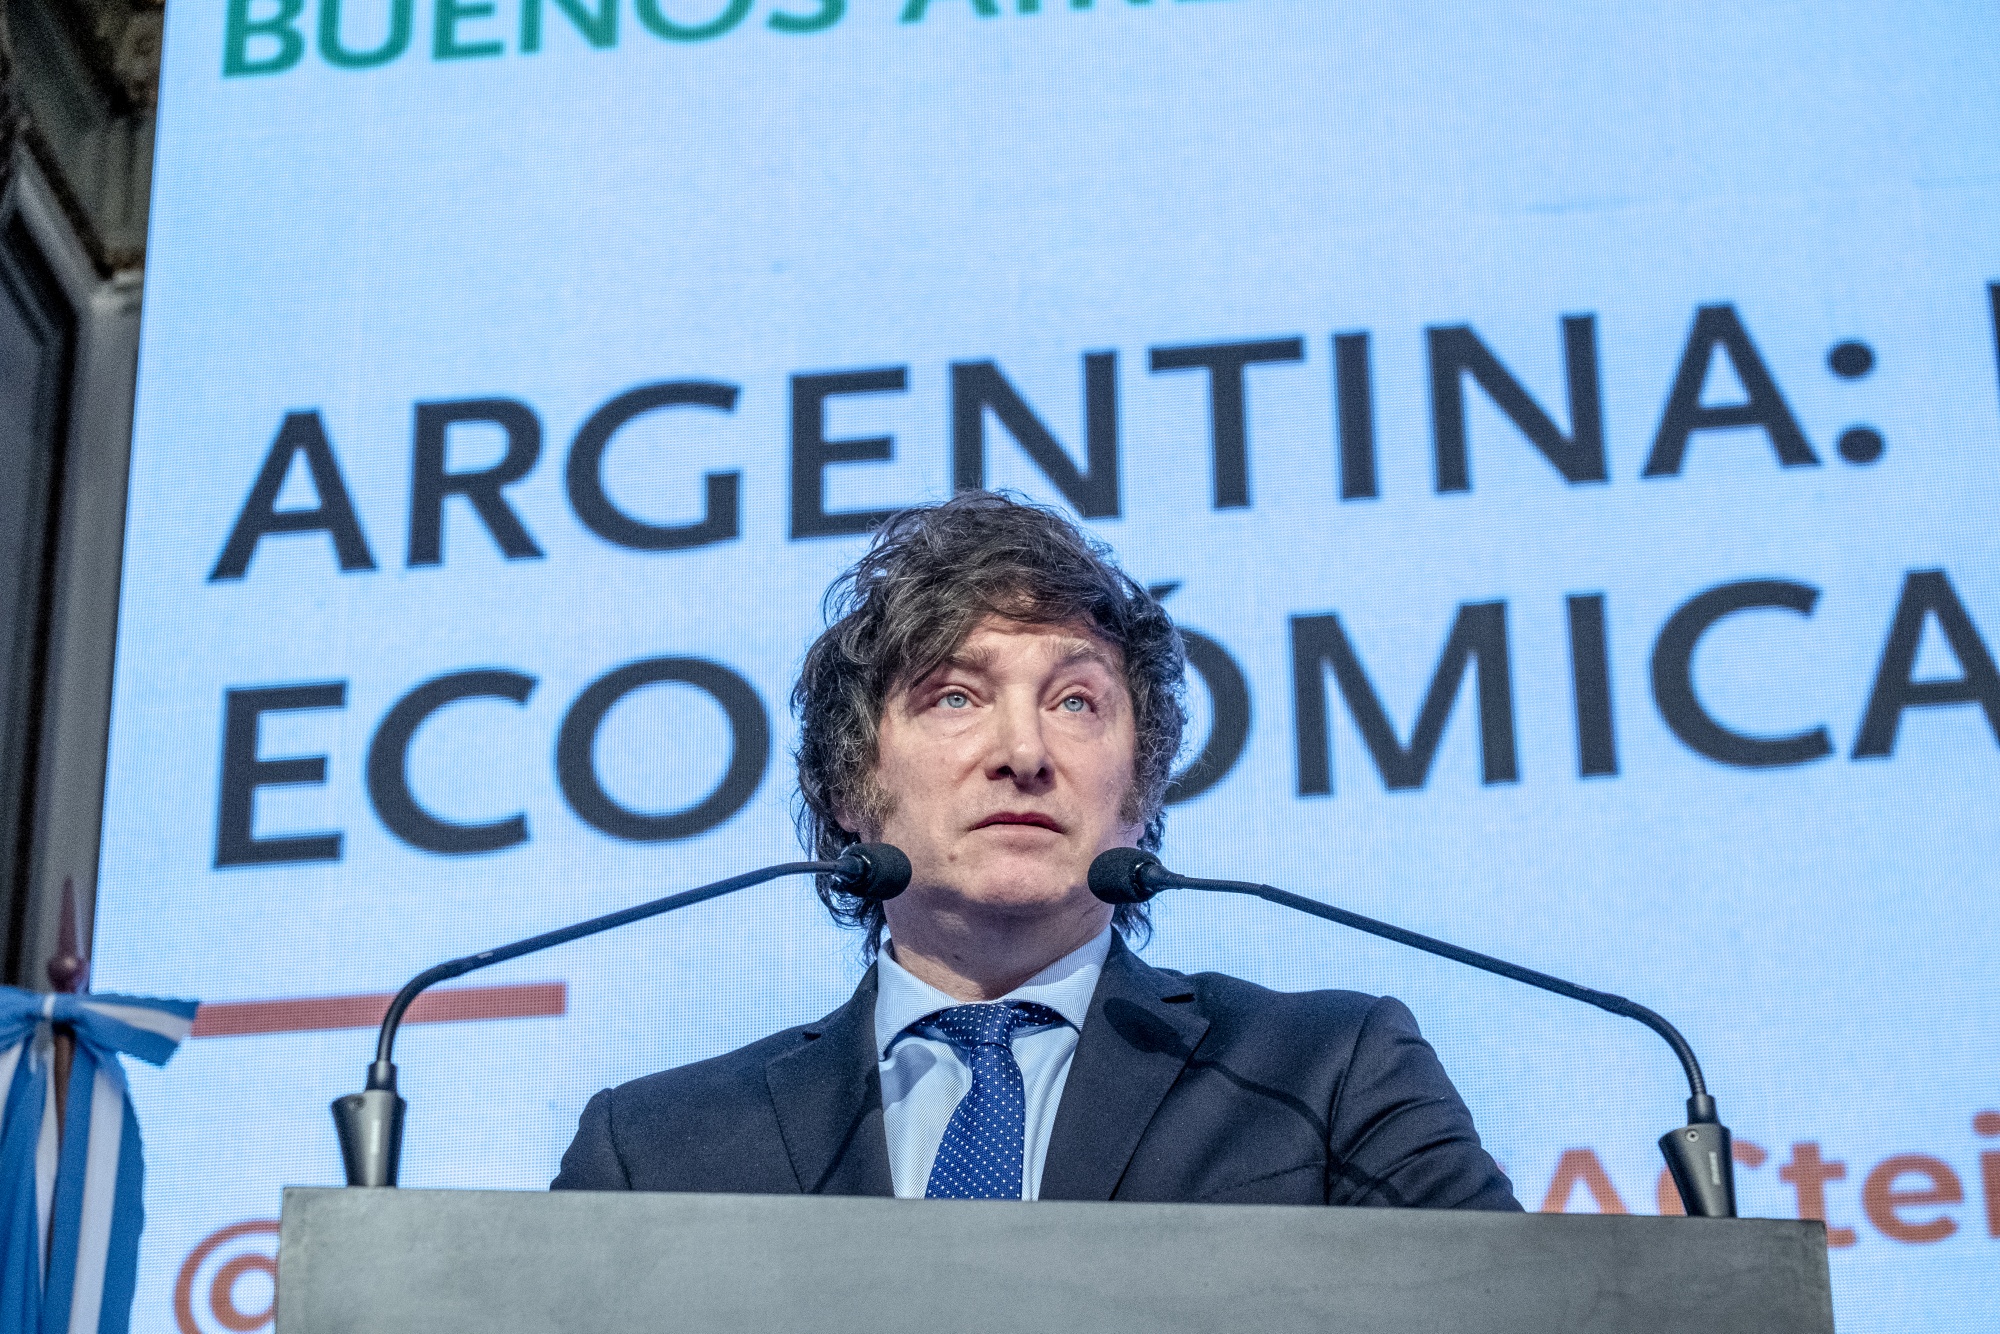 Economistas internacionales publican una carta en contra del plan económico de Javier Milei